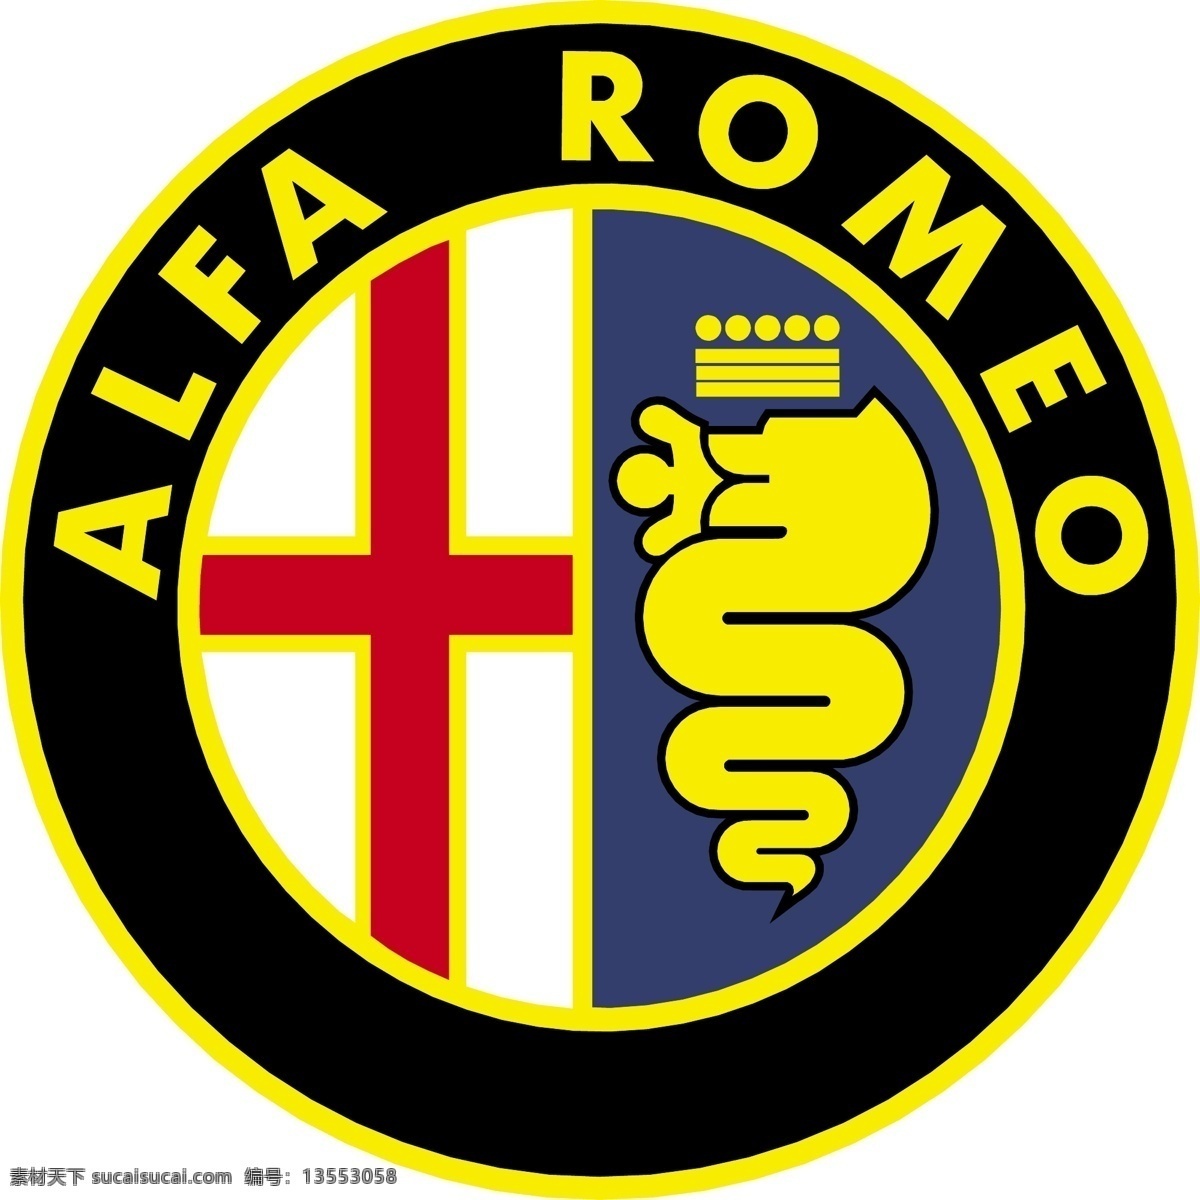 阿尔法 romeo2 矢量标志下载 免费矢量标识 商标 品牌标识 标识 矢量 免费 品牌 公司 白色